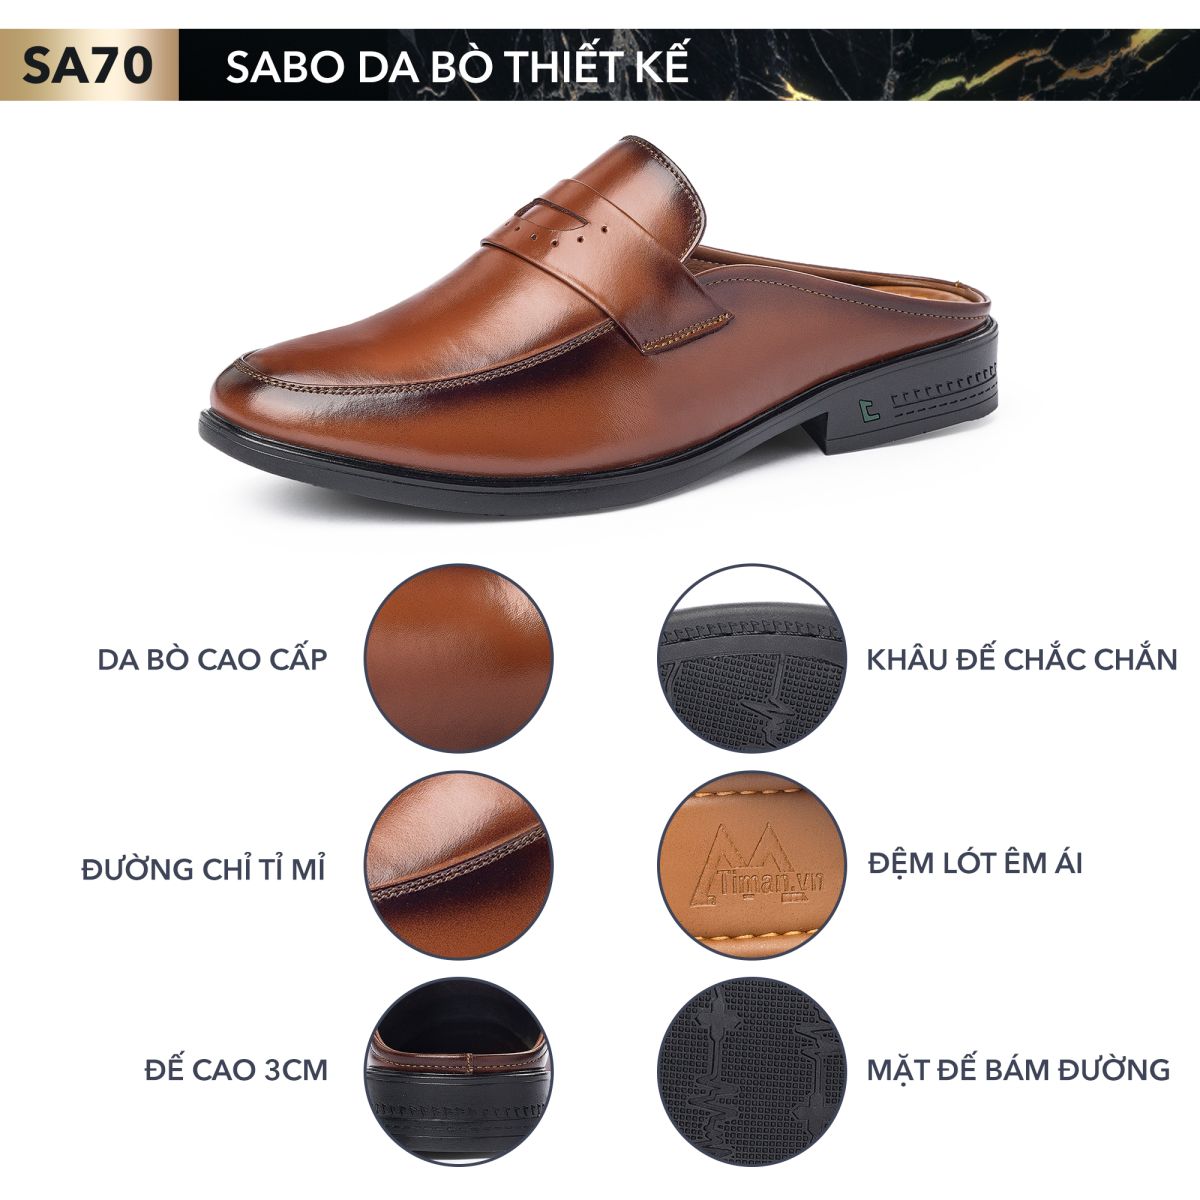 Giày sục nam SA70 thiết kế độc quyền